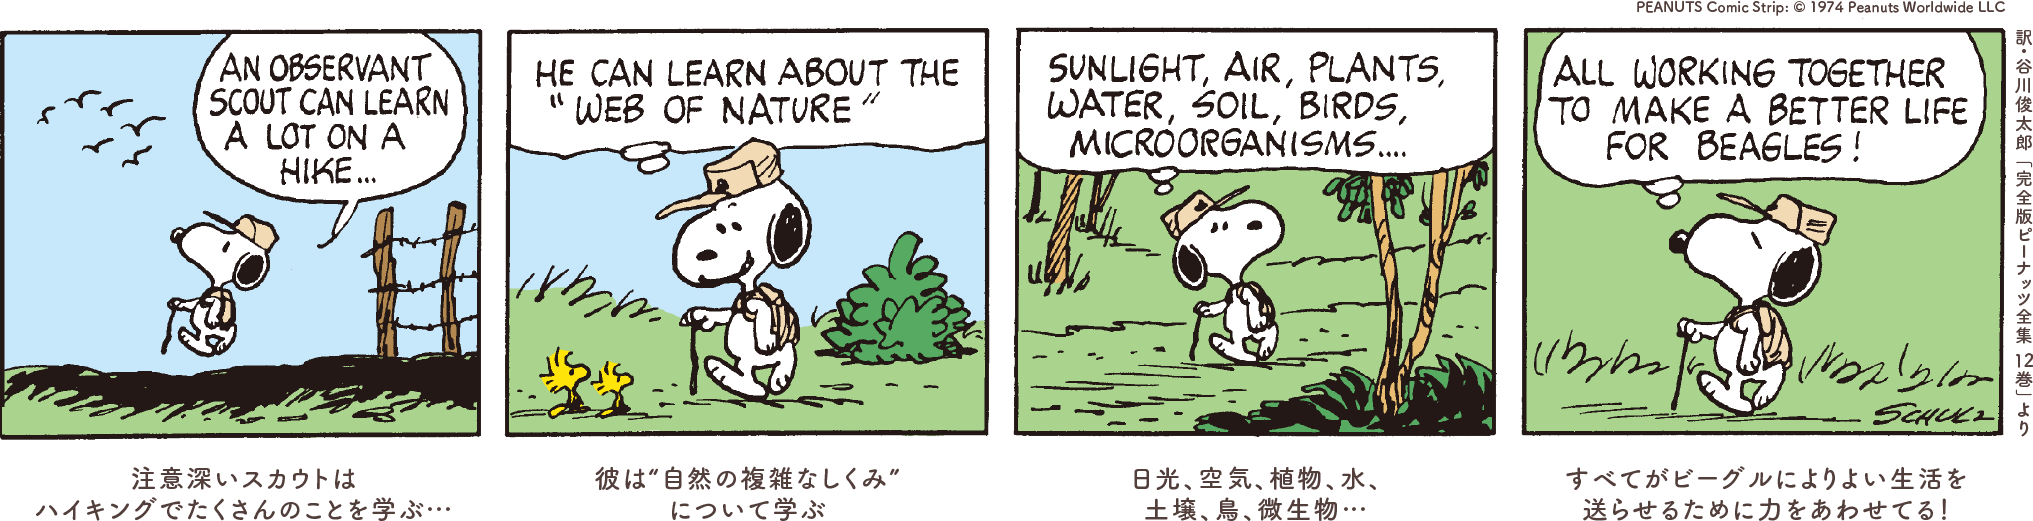 1コマ目：注意深いスカウトはハイキングでたくさんのことを学ぶ… 2コマ目：彼は“自然の複雑なしくみ”について学ぶ 3コマ目：日光、空気、植物、水、土壌、鳥、微生物… 4コマ目：すべてがビーグルによりよい生活を送らせるために力をあわせてる！ PEANUTS Comic Strip: © 1974 Peanuts Worldwide LLC 訳:谷川俊太郎「完全版ピーナッツ全集 12巻」より